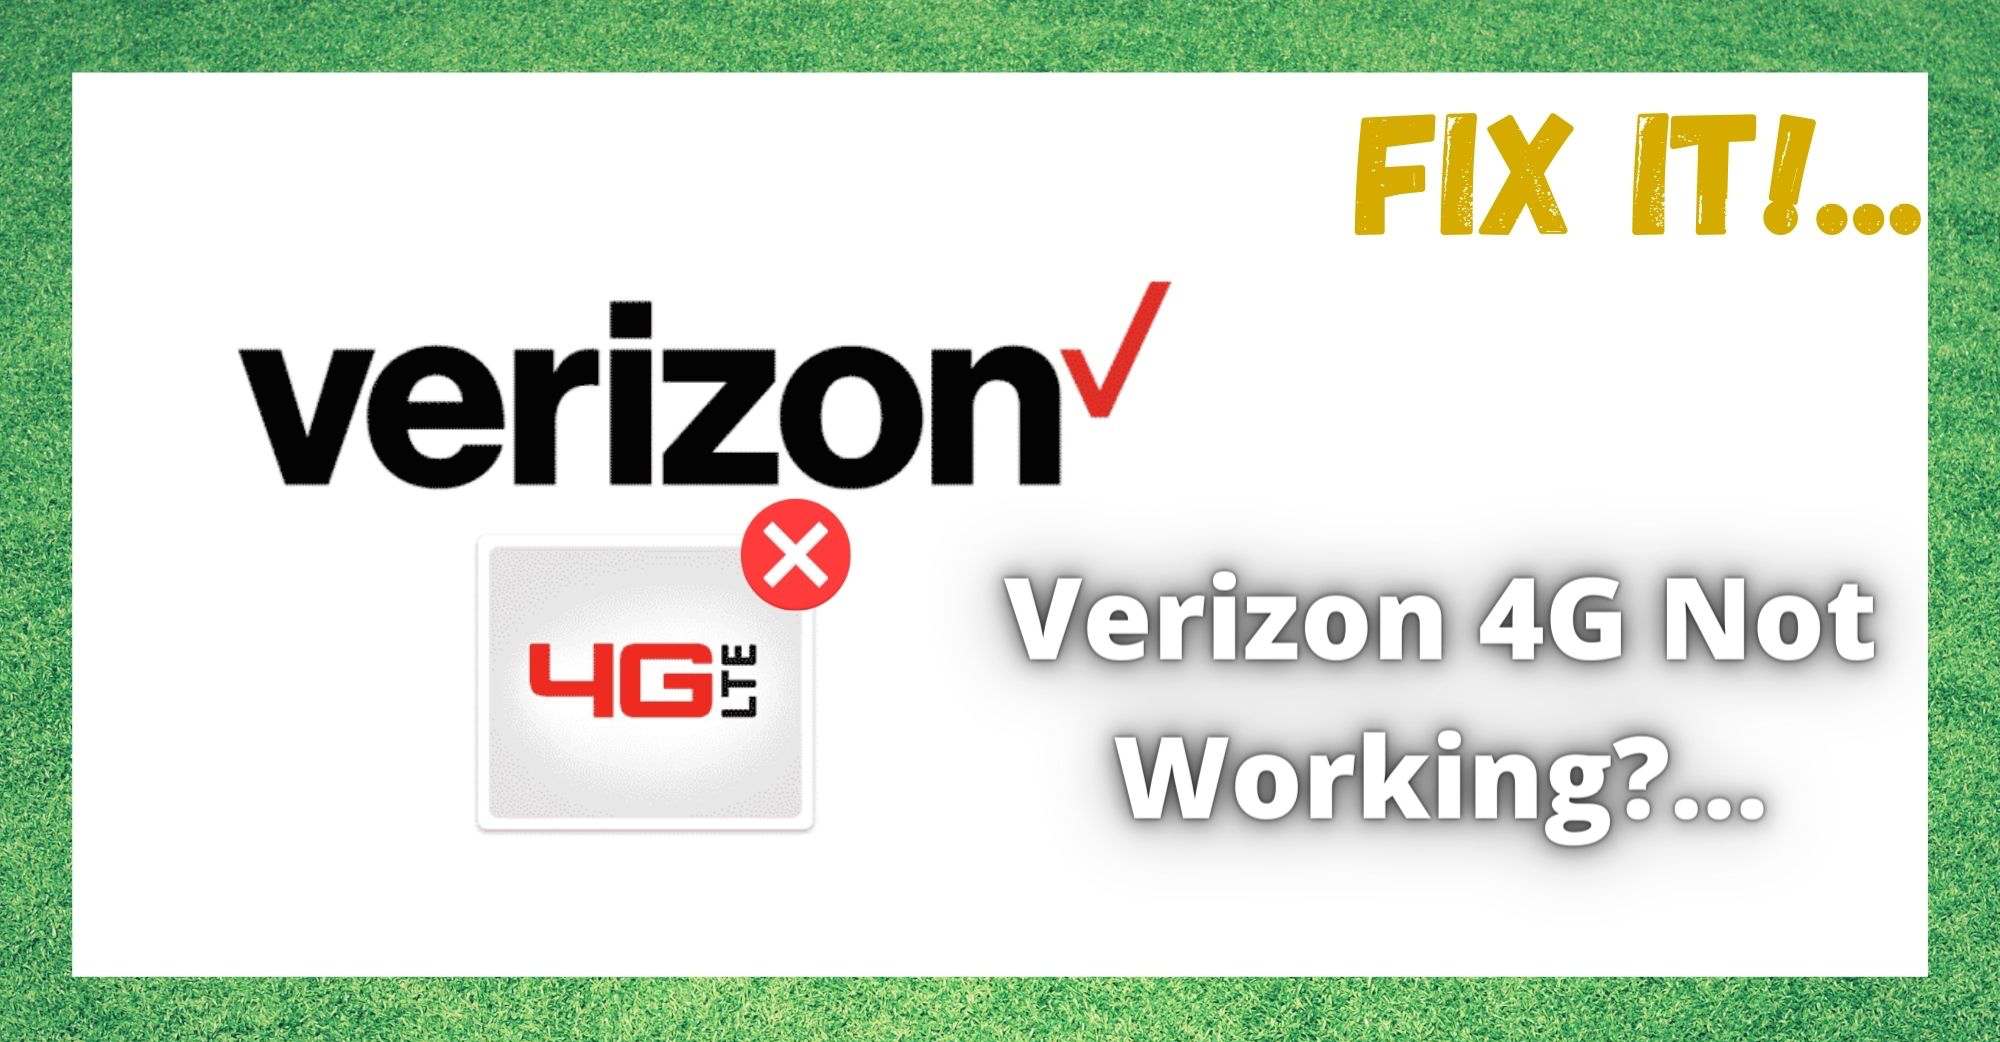 Verizon 4G ажиллахгүй байна: Засах 5 арга